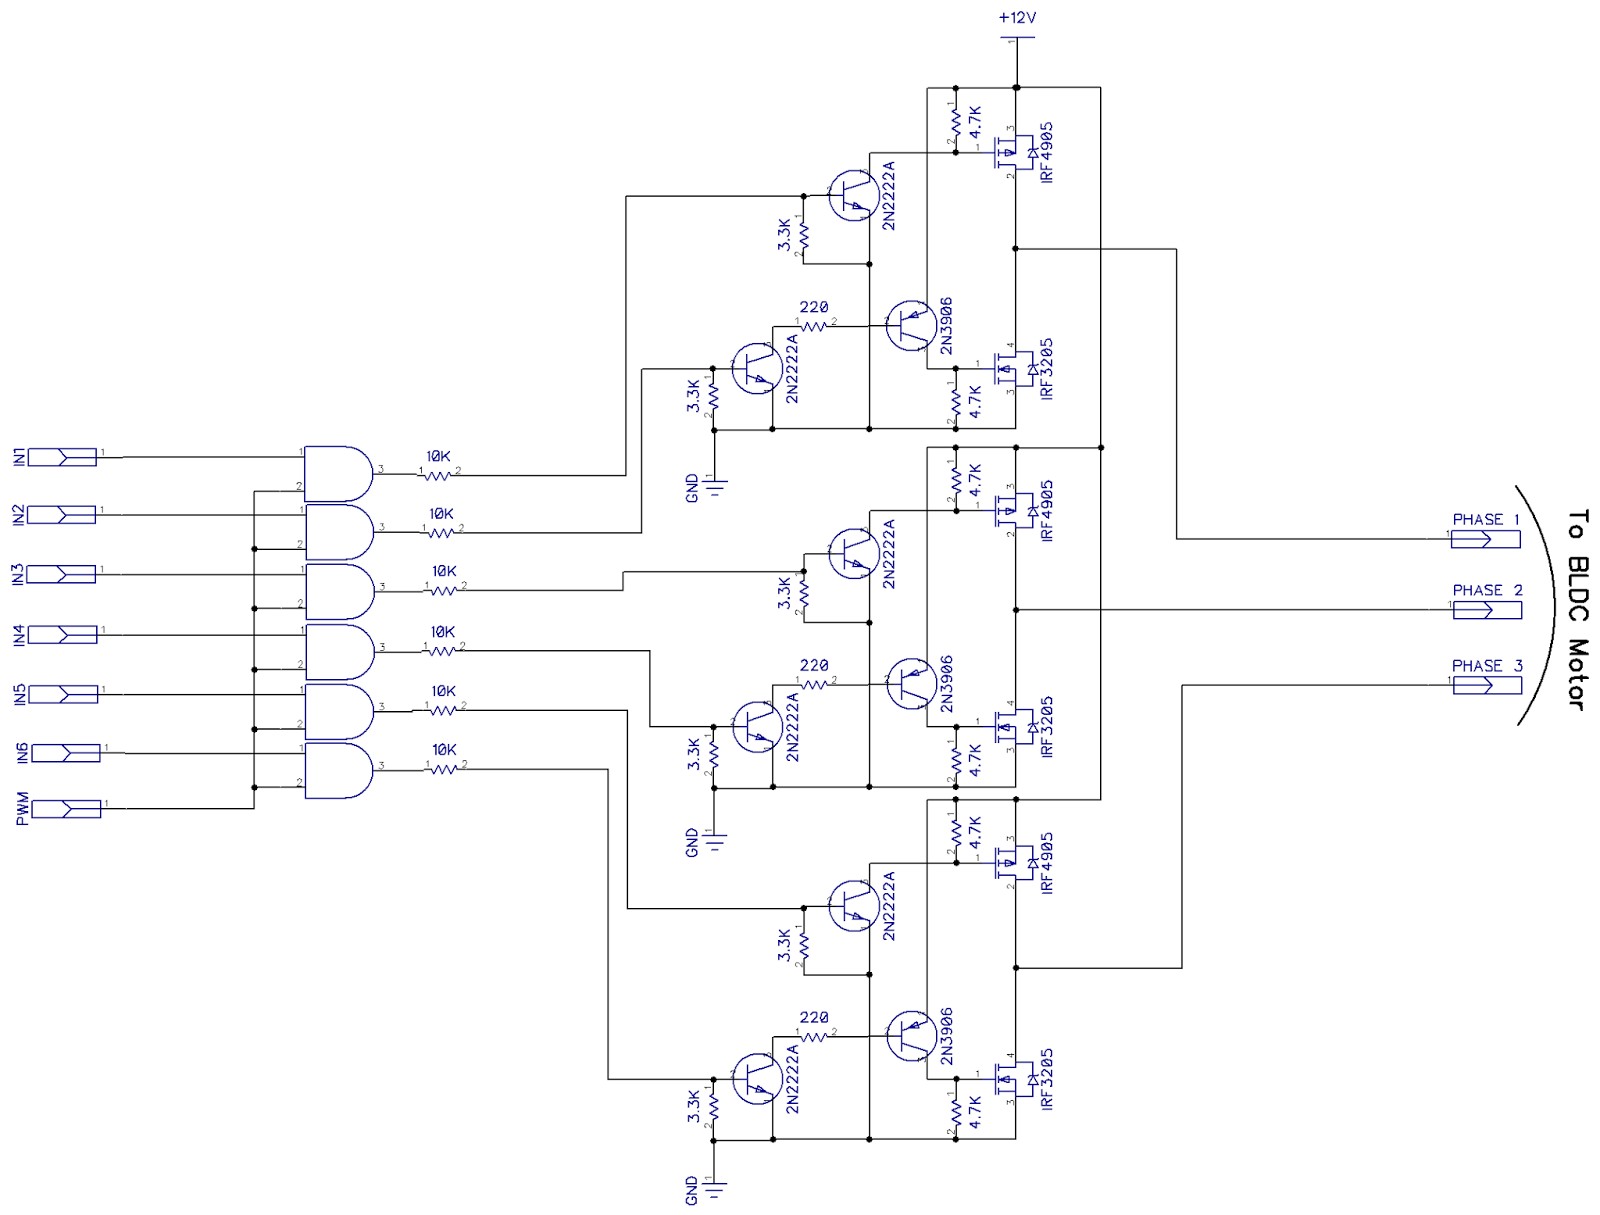 Motor Wiring Diagram 3 Phase Bldc Motor Controller Using Arduino Three Phase Bridge Wiring Of Motor Wiring Diagram 3 Phase